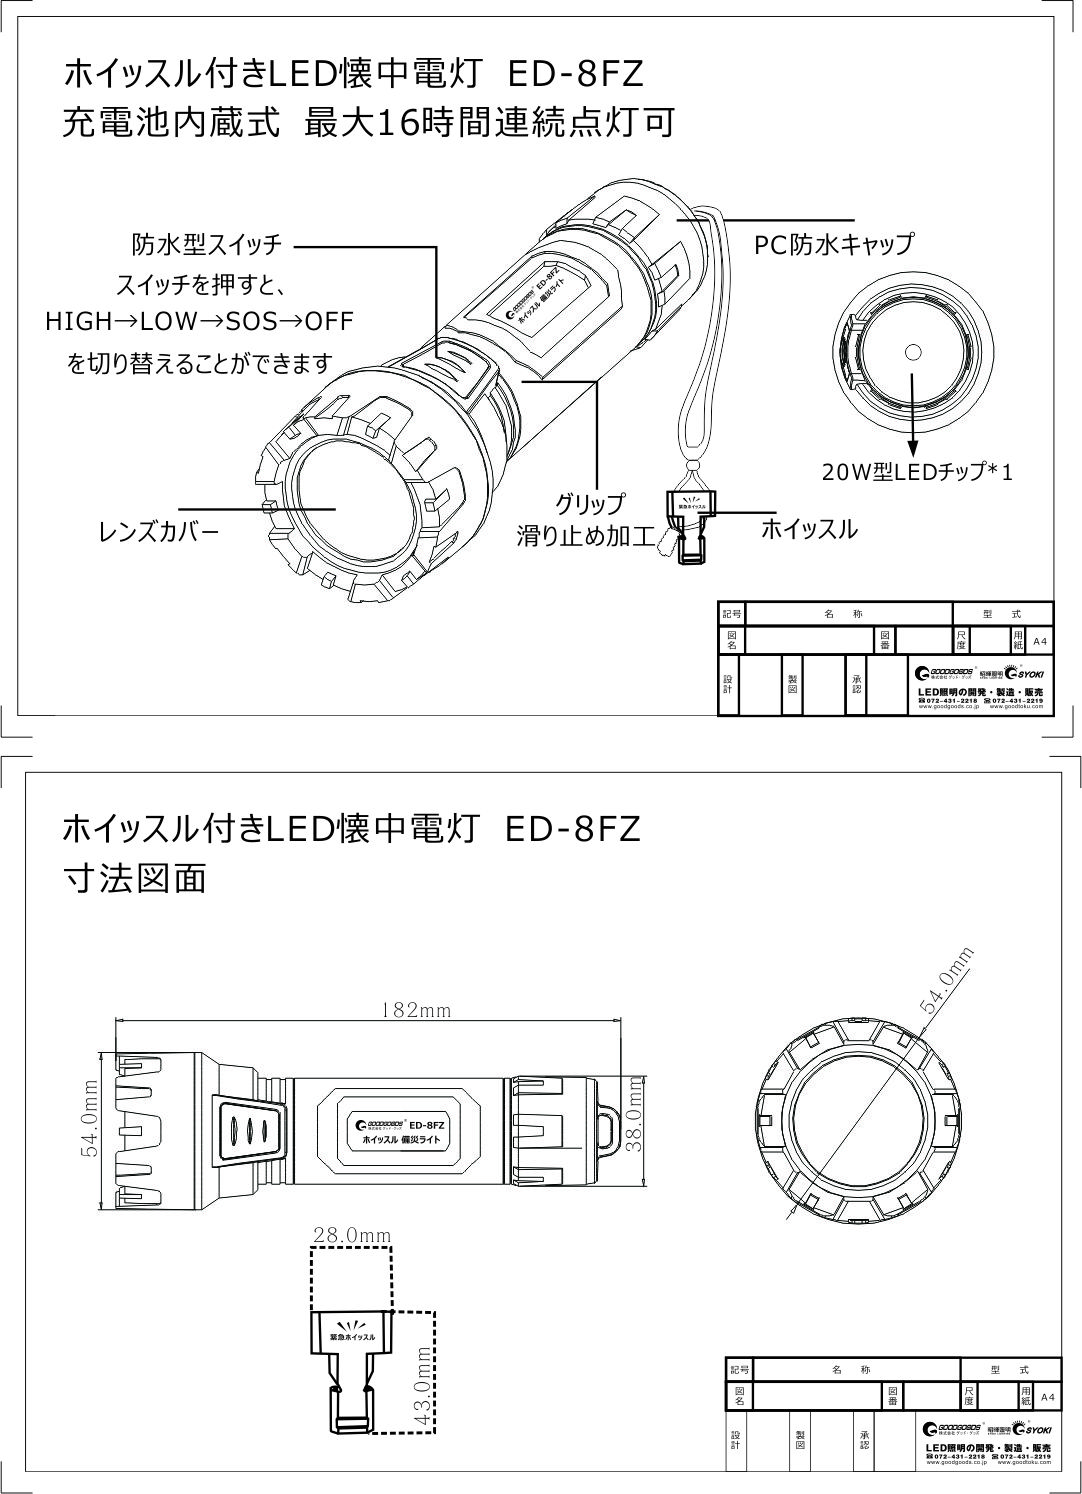 ホイッスル付きLED懐中電灯のED-8FZ仕様図面です